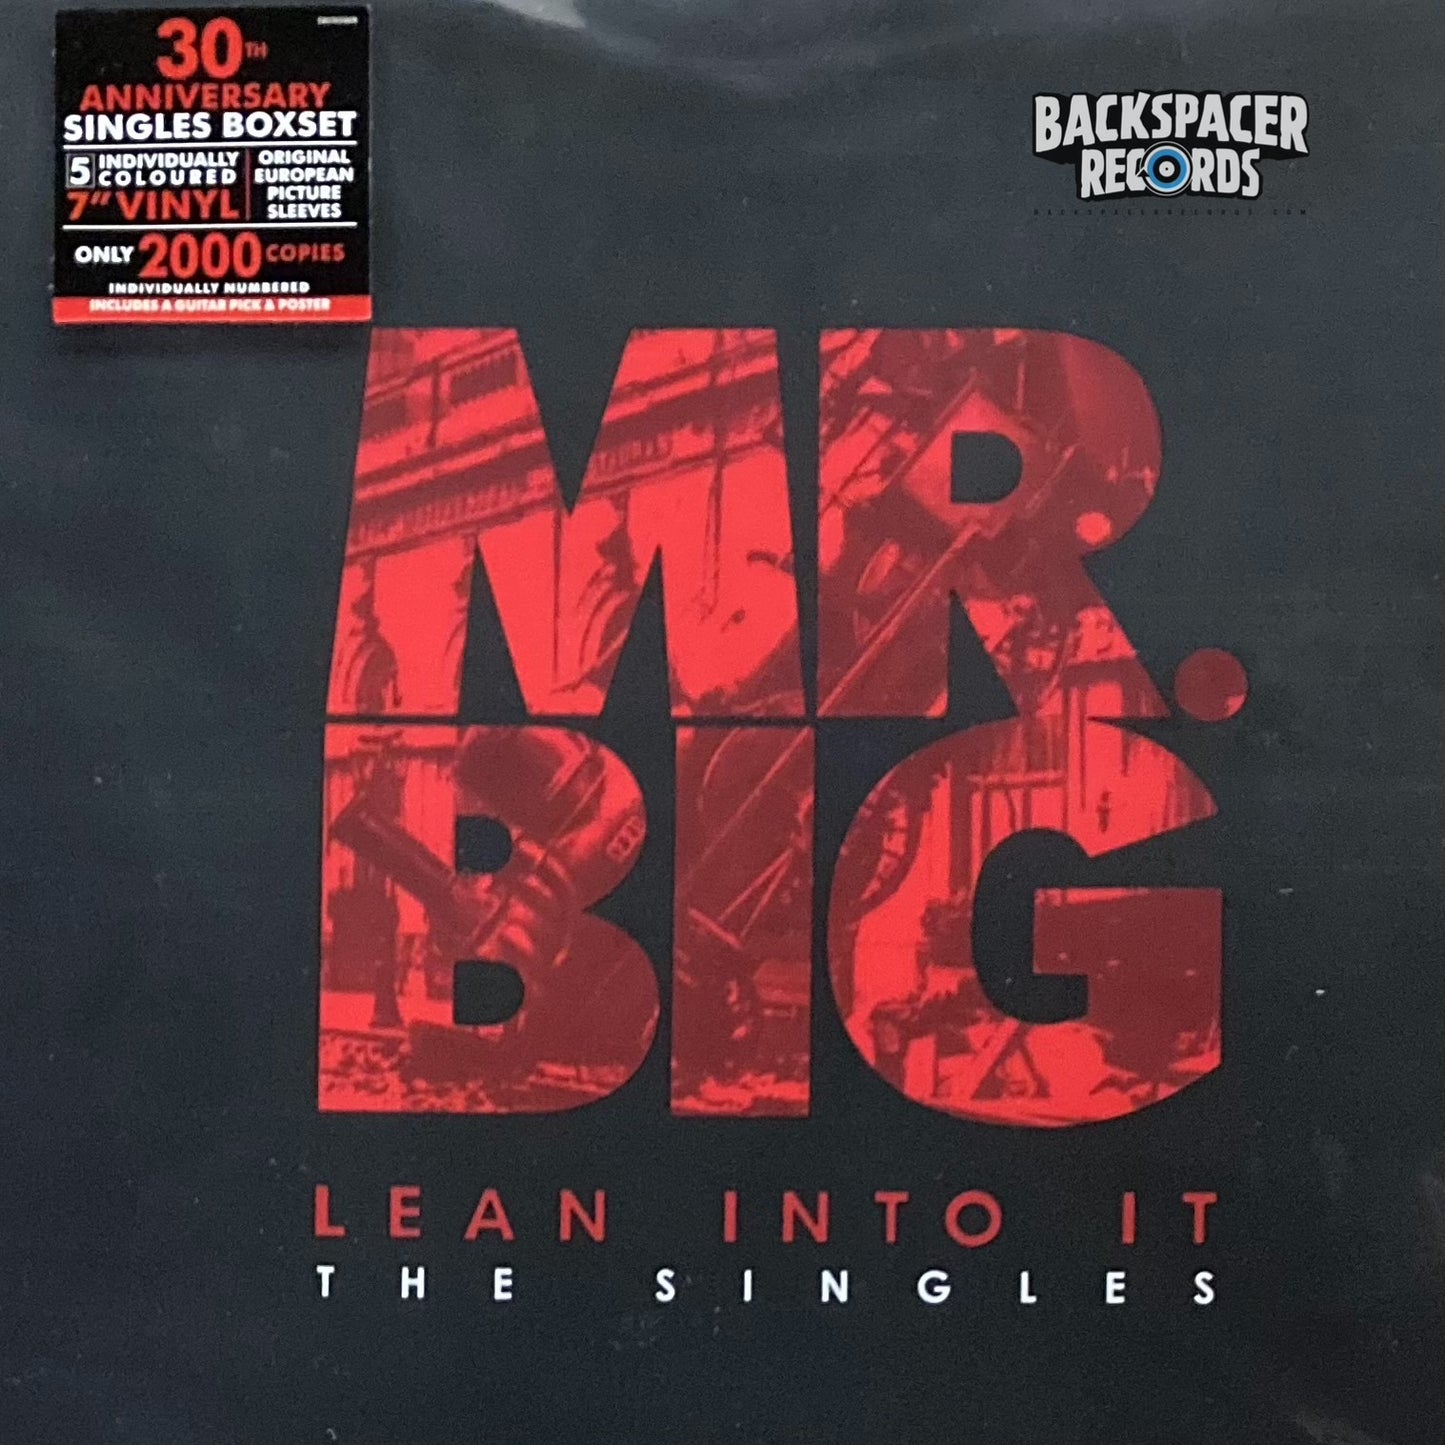 Mr. Big - Lean Into It: The Singles 5 x 7" Boxset